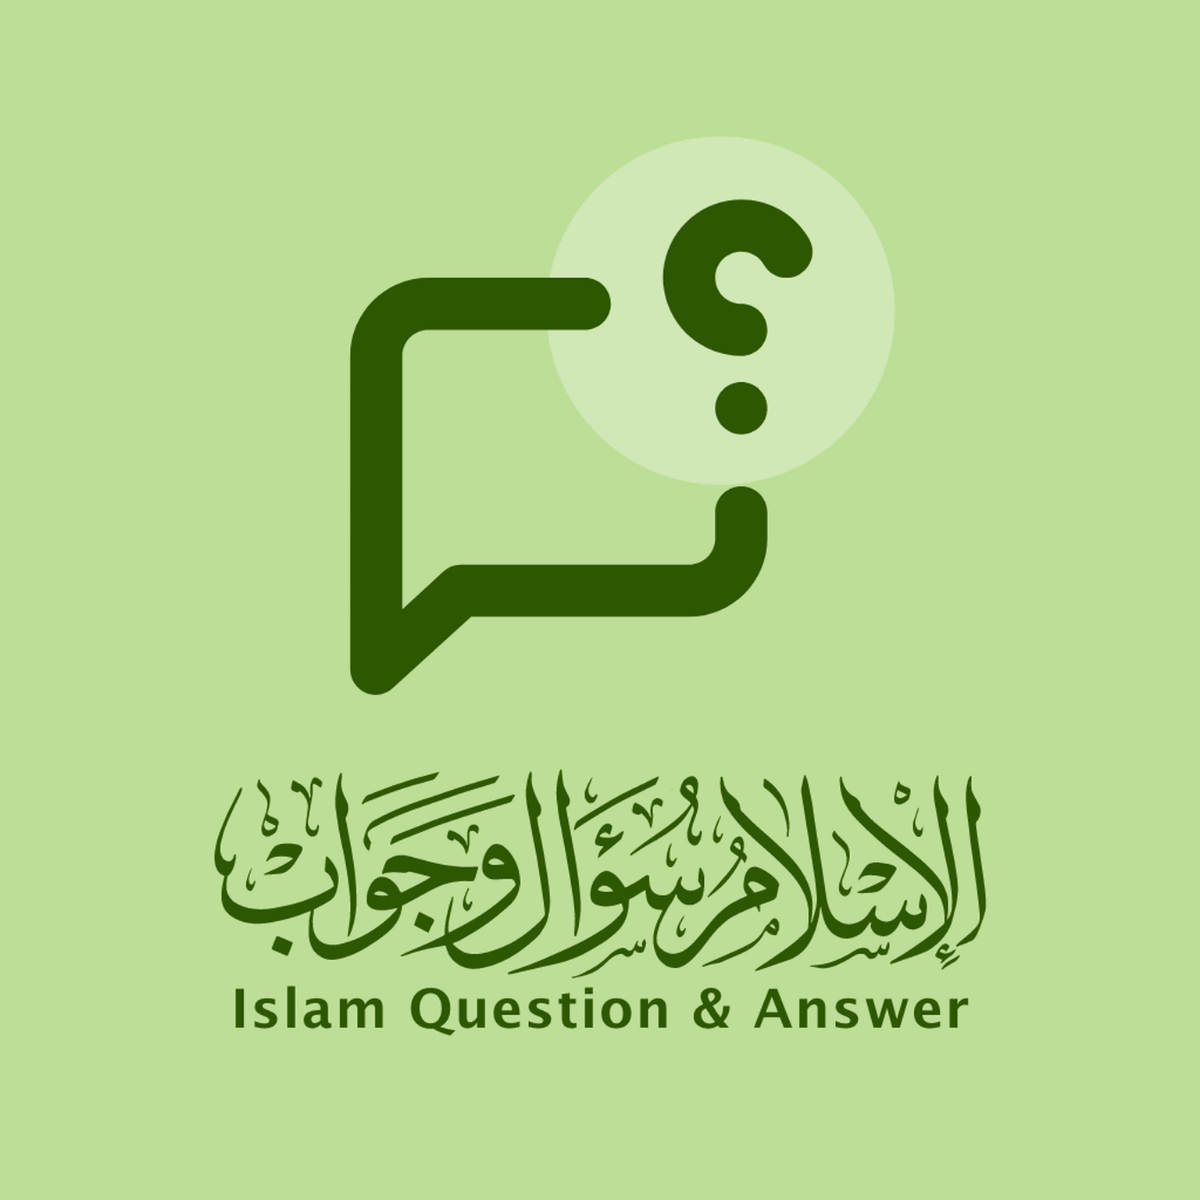 islamqa.info